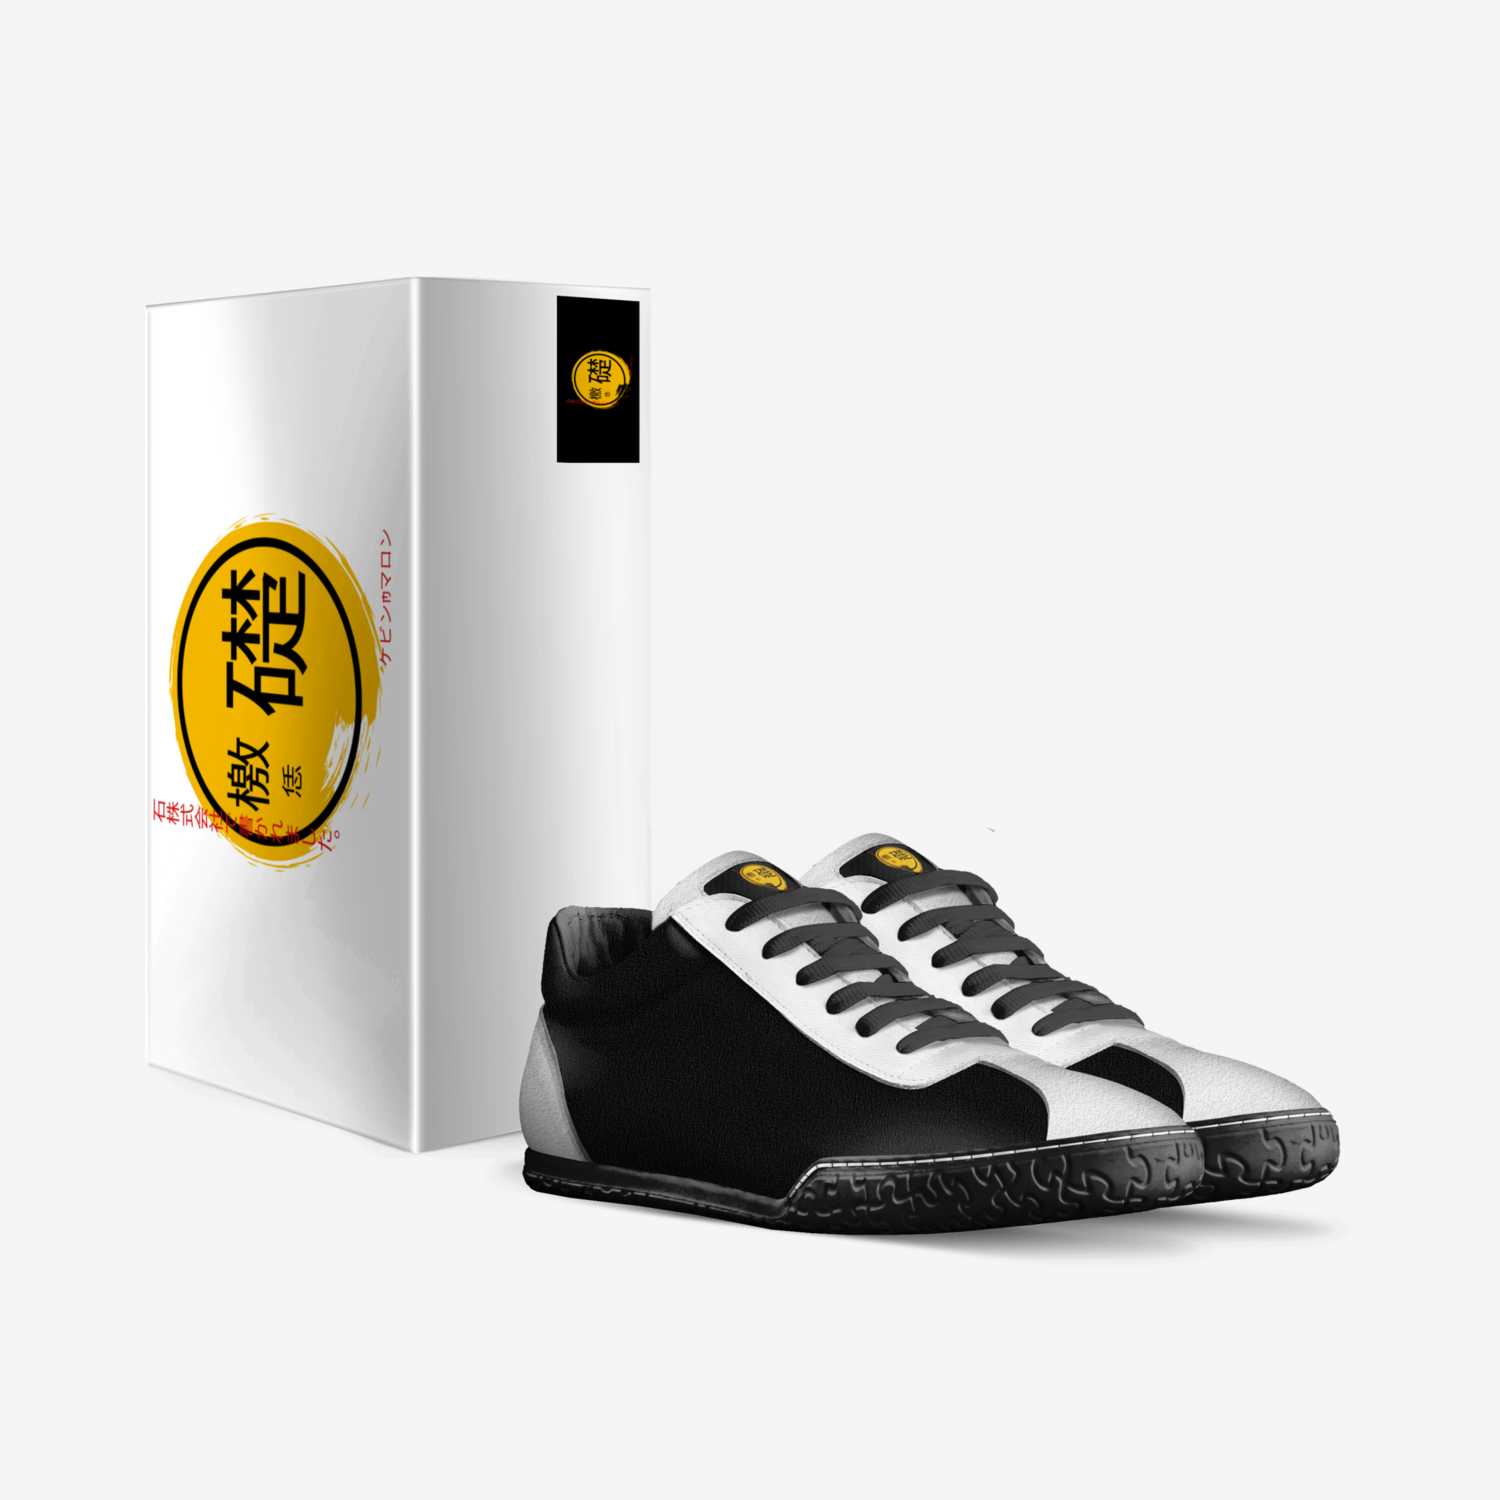 石株式会社で書かれました。BLK custom made in Italy shoes by Kevin Marron | Box view